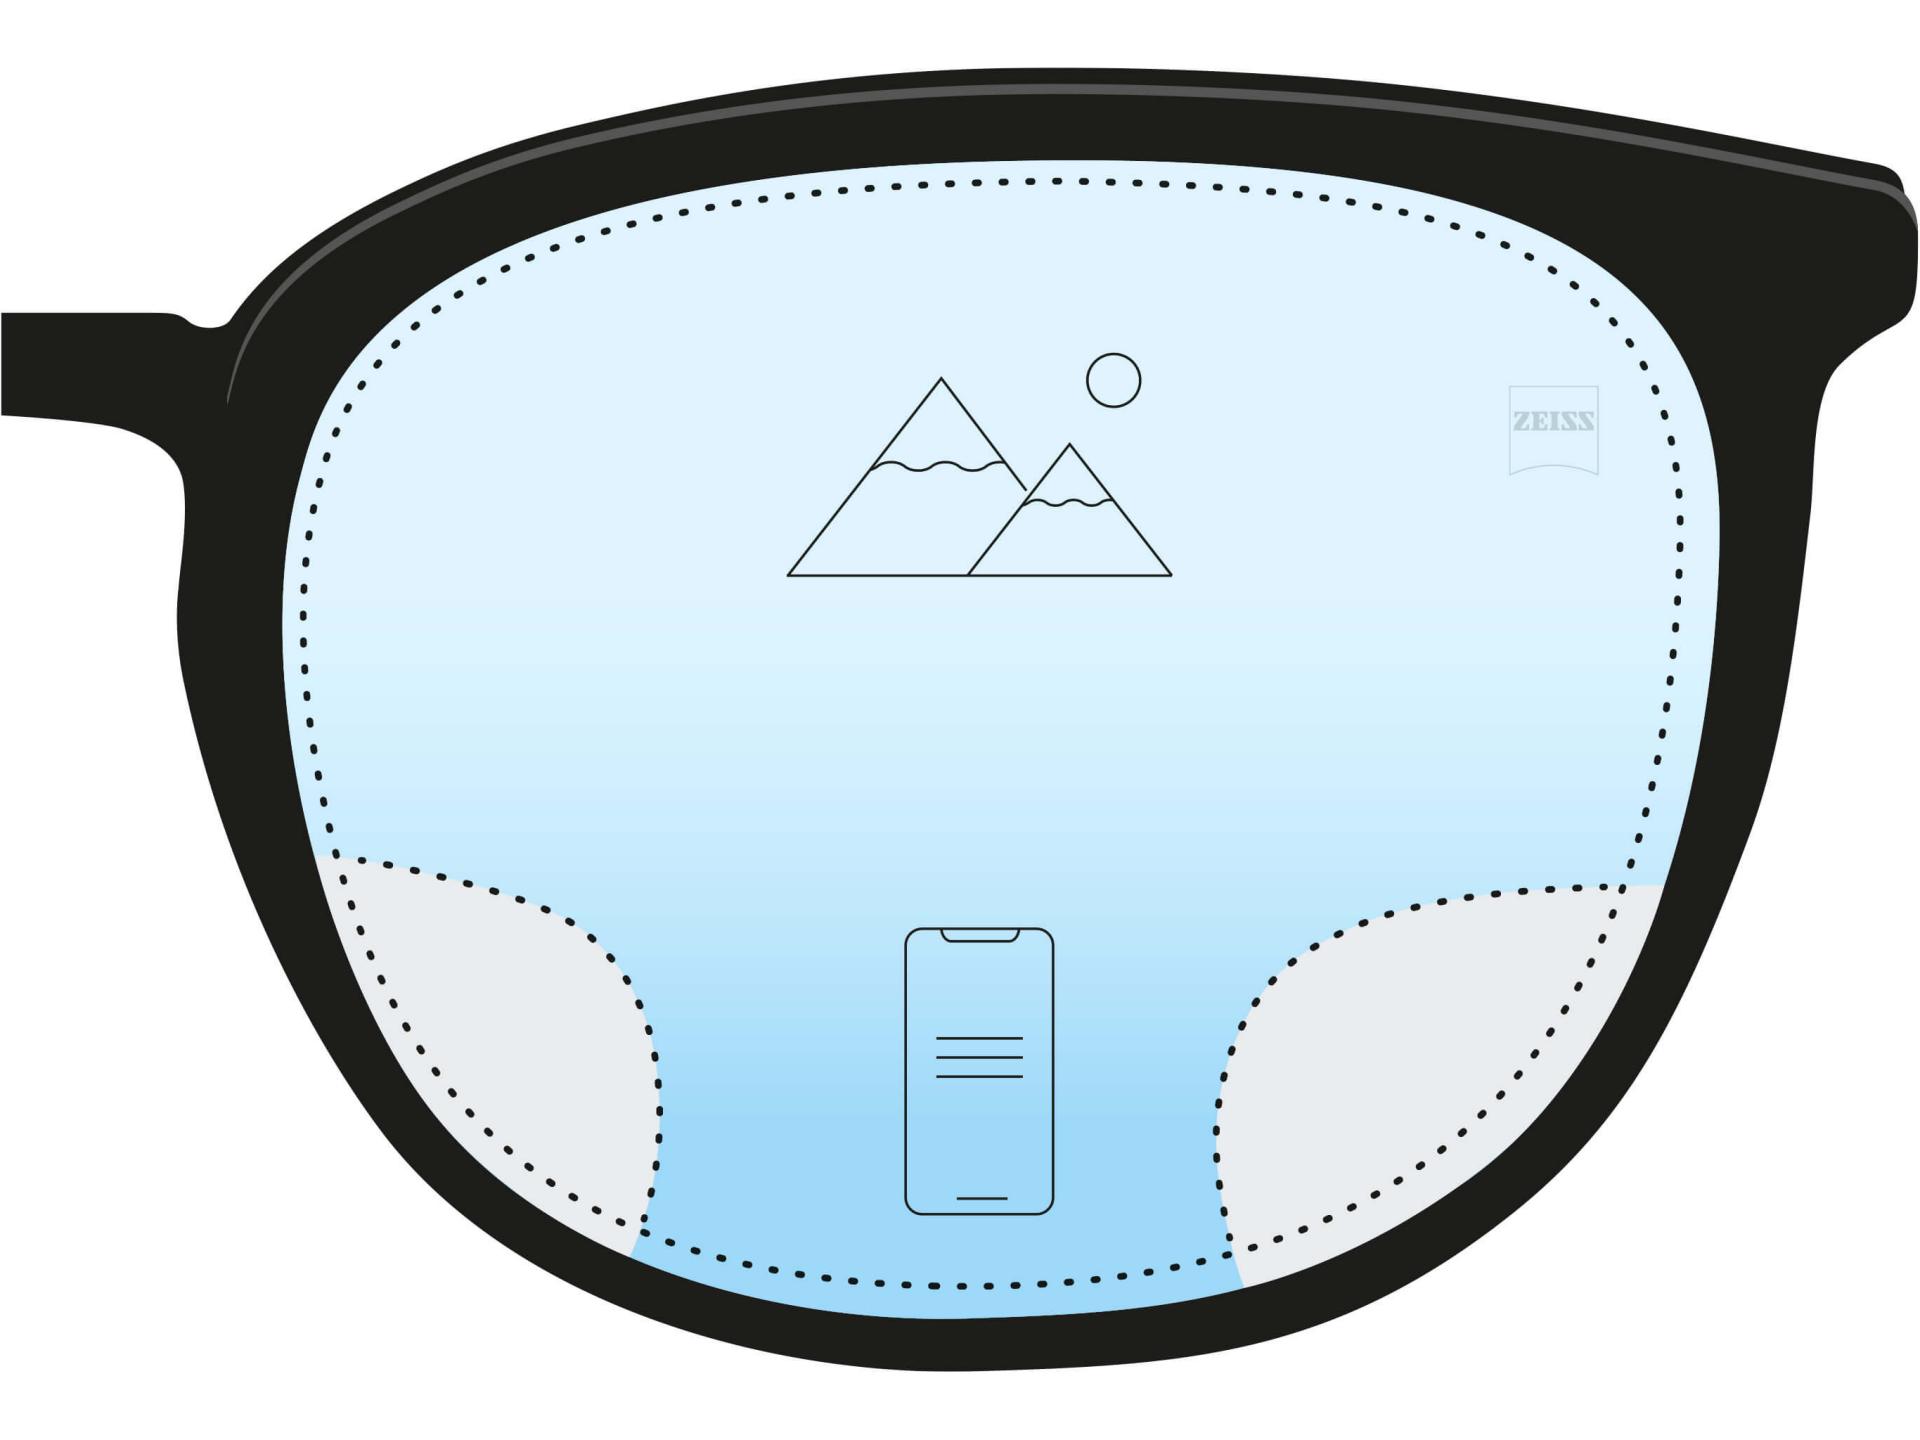 Een illustratie van een antivermoeidheidsbrillenglas. Twee pictogrammen en een kleurverloop van donkerblauw aan de onderkant naar lichtblauw aan de bovenkant geven aan dat het grootste deel van het brillenglas een afstandssterkte heeft, maar dat er aan de onderkant een klein deel is dat helpt bij het zien van dichtbij.